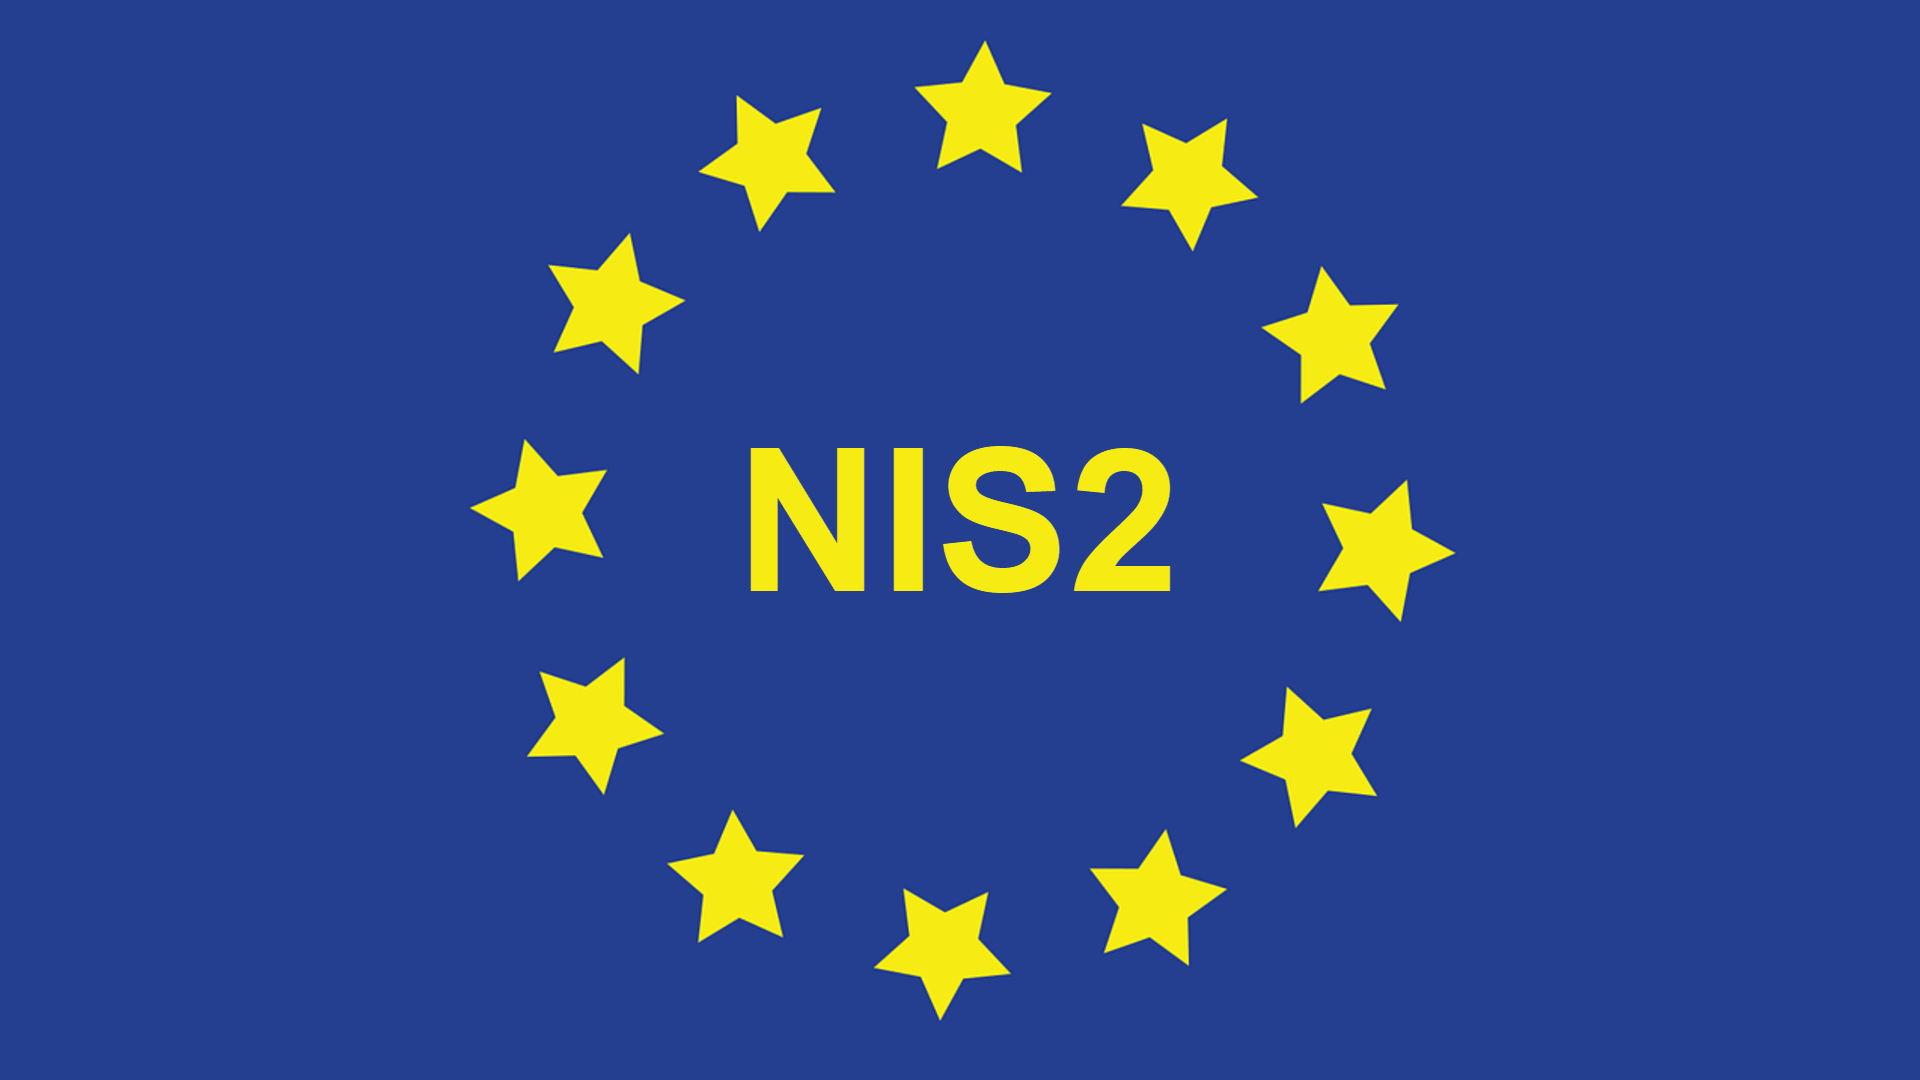 NIS2, NIB2